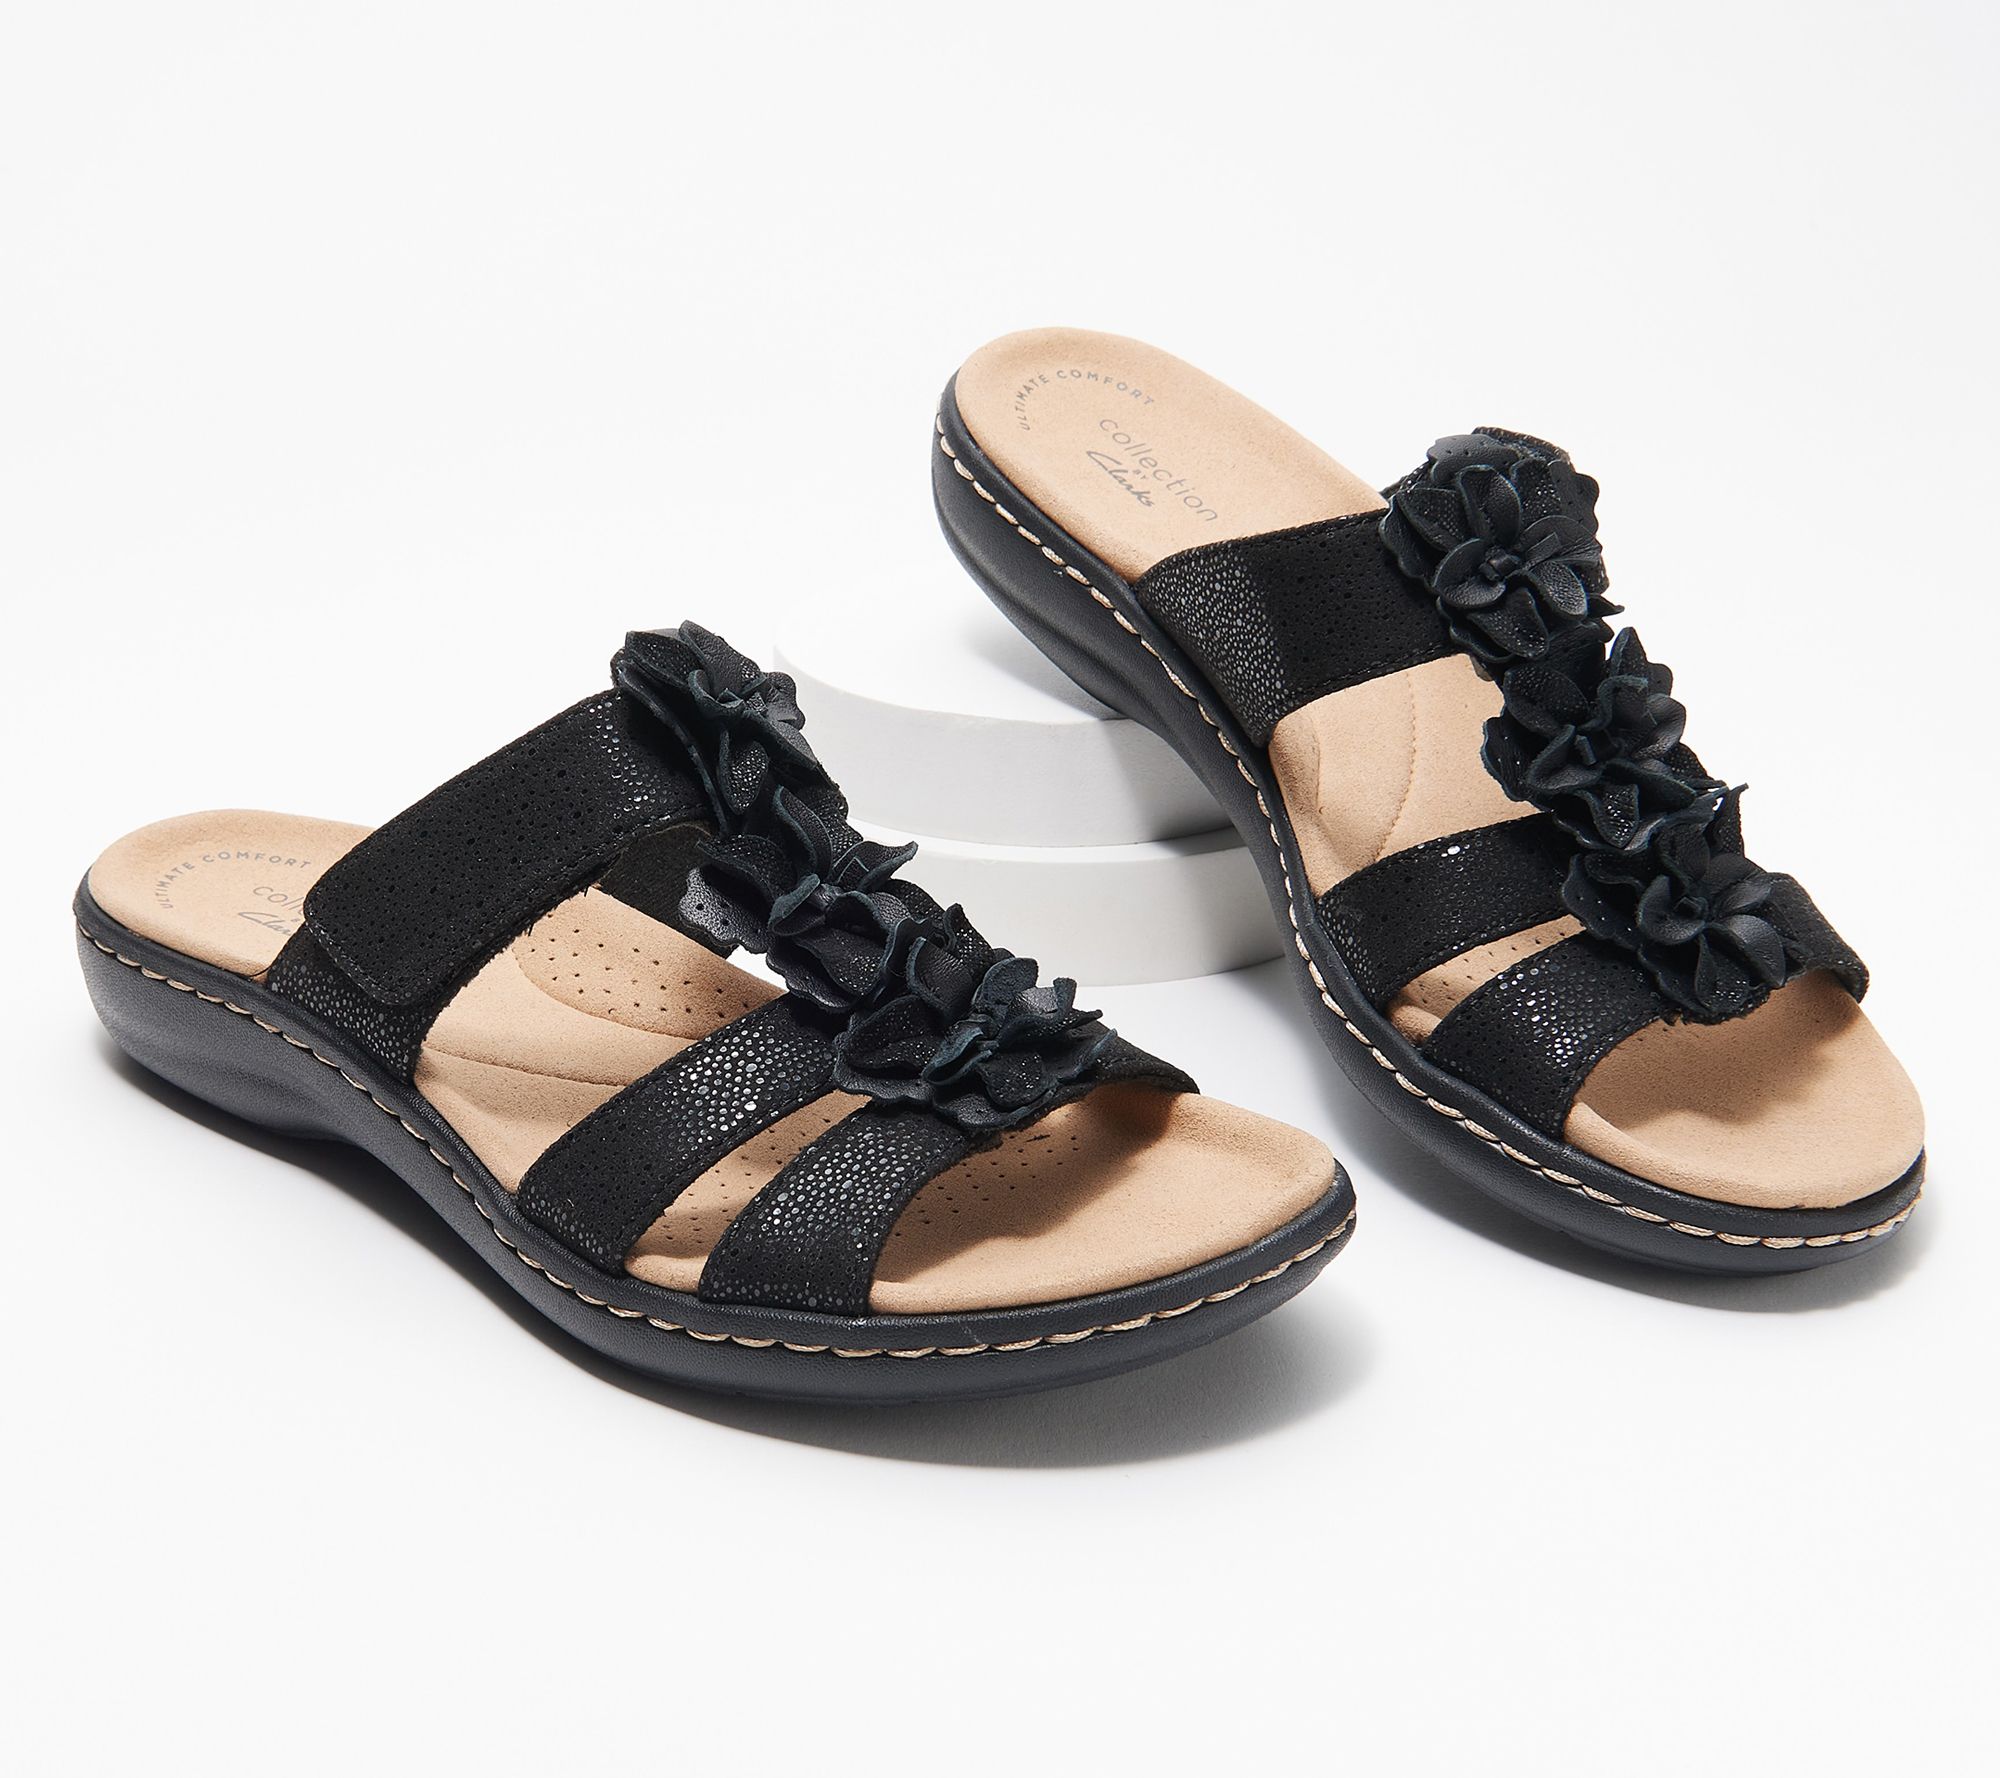 Clarks Leather Slide Sandals - Laurieann Judi - QVC.com